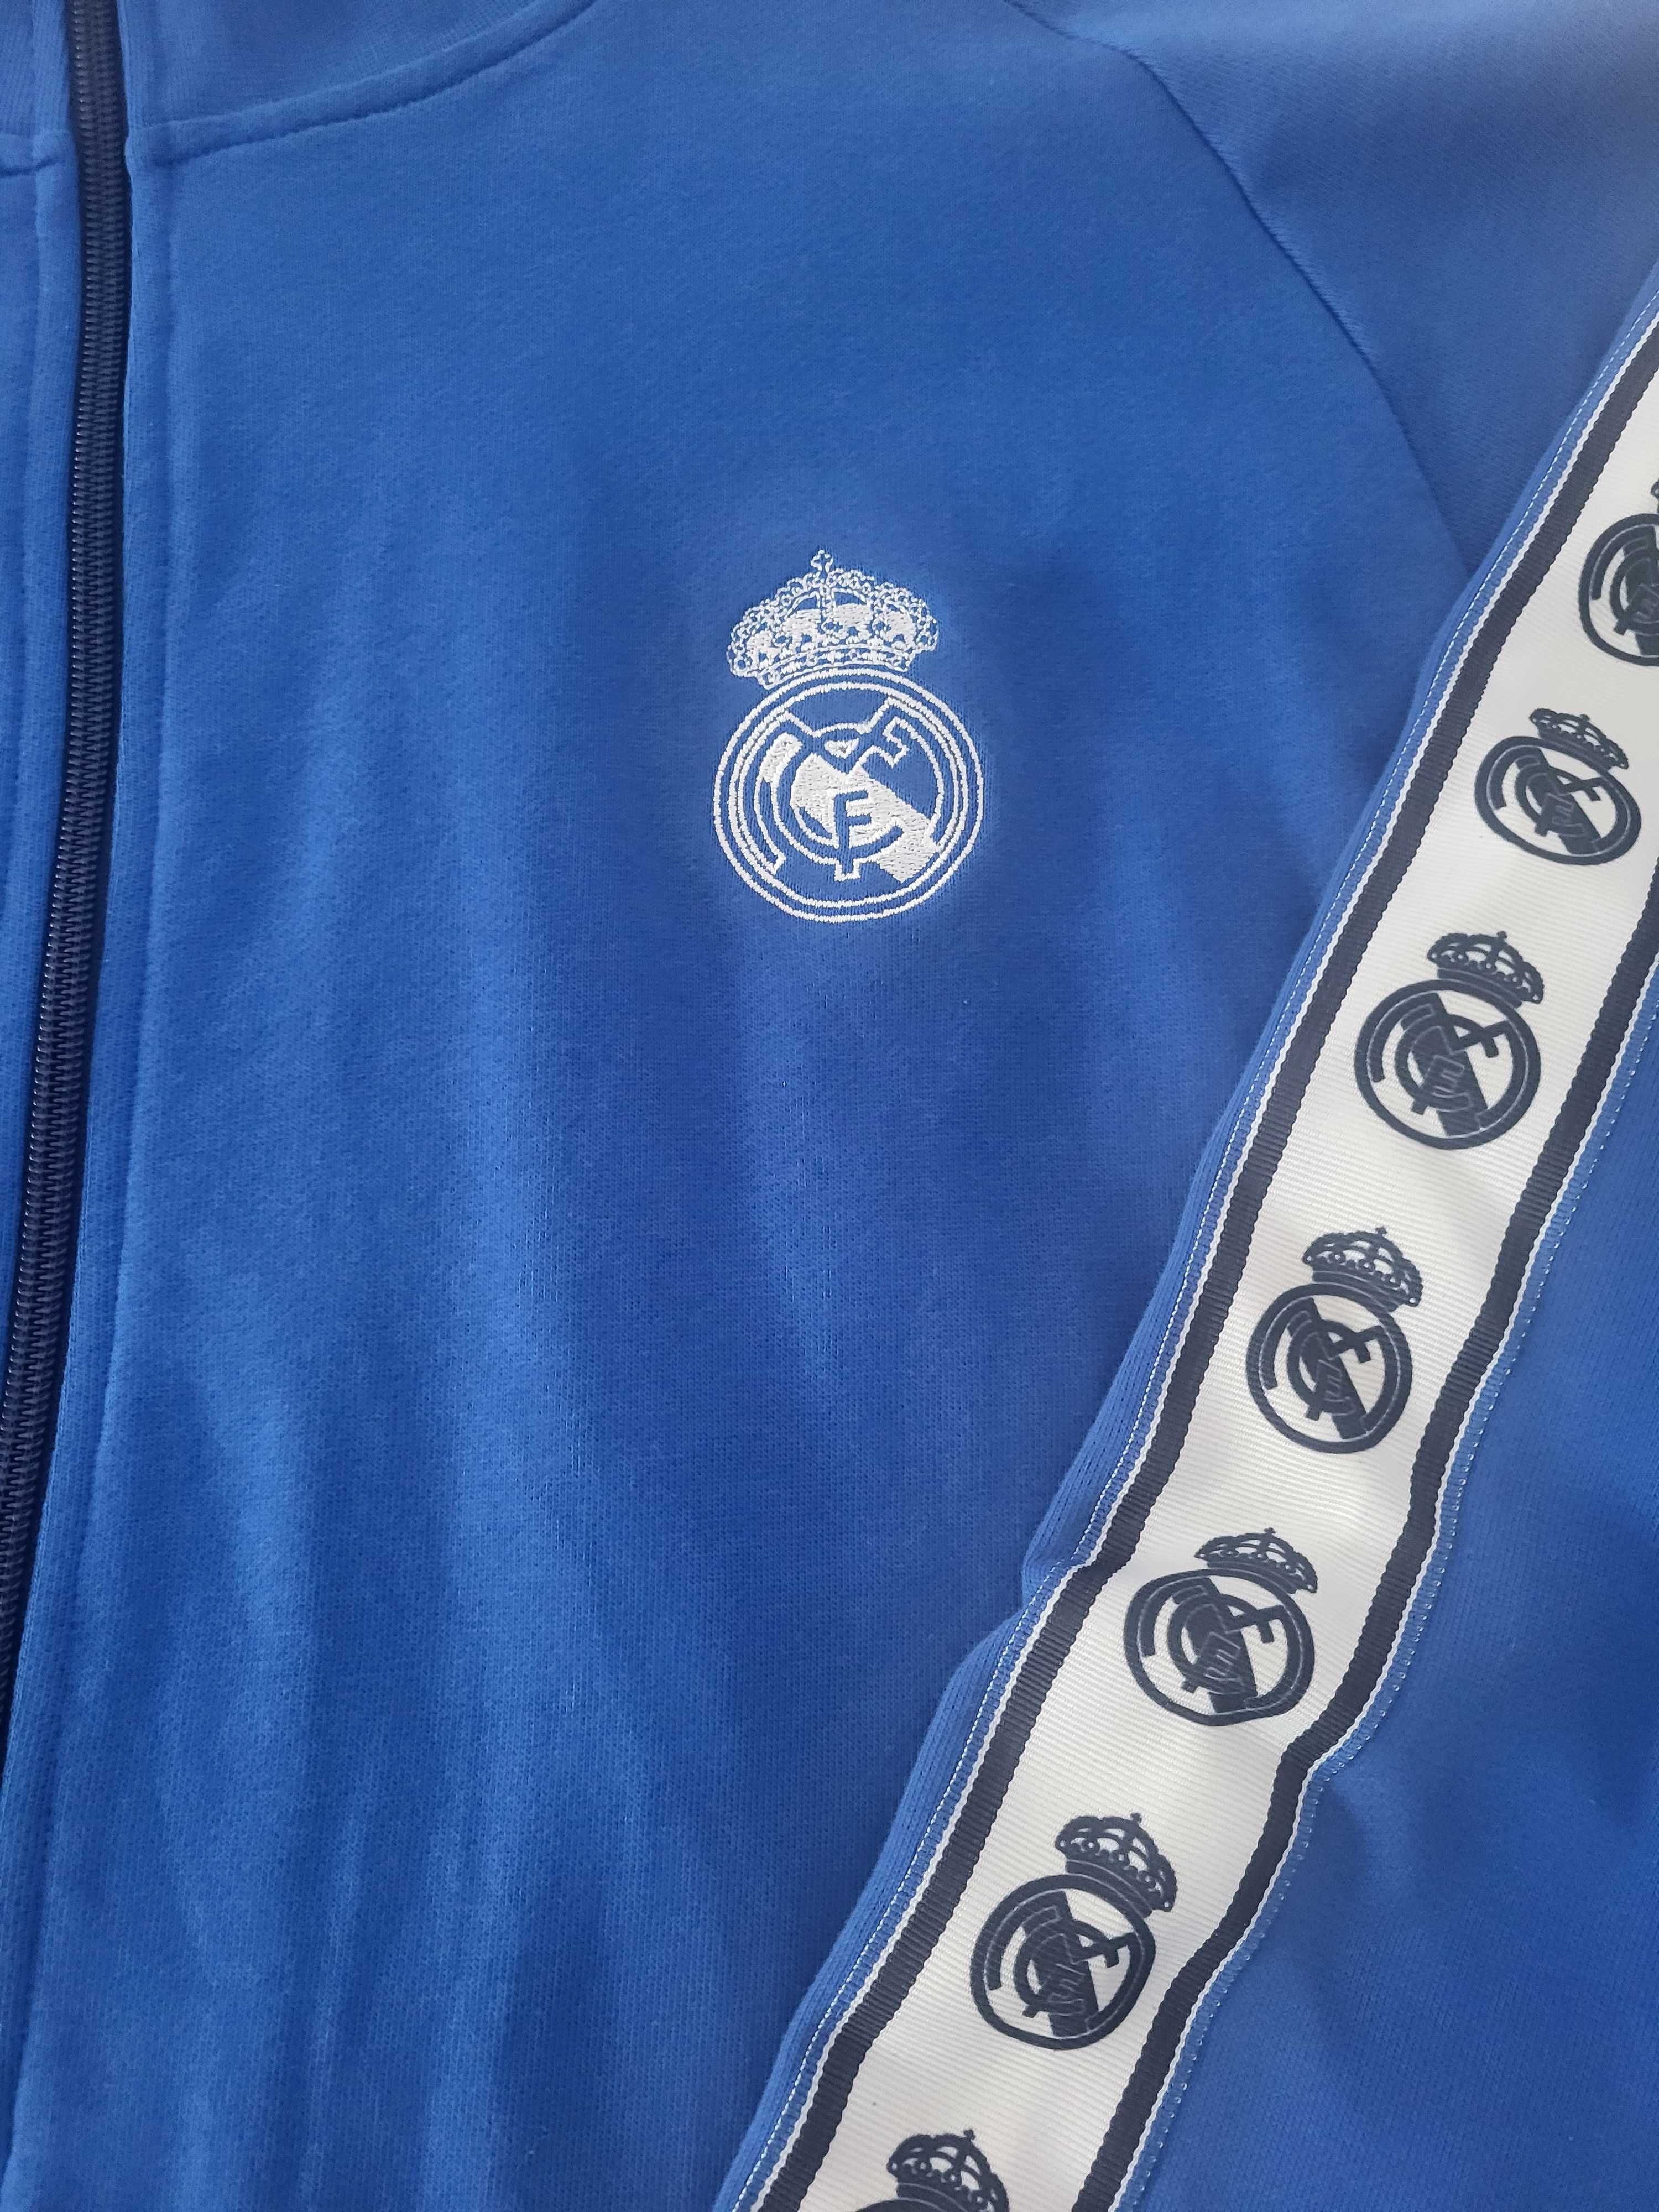 Męski top zapinany na zamek w kolorze niebieskim - Real Madrid